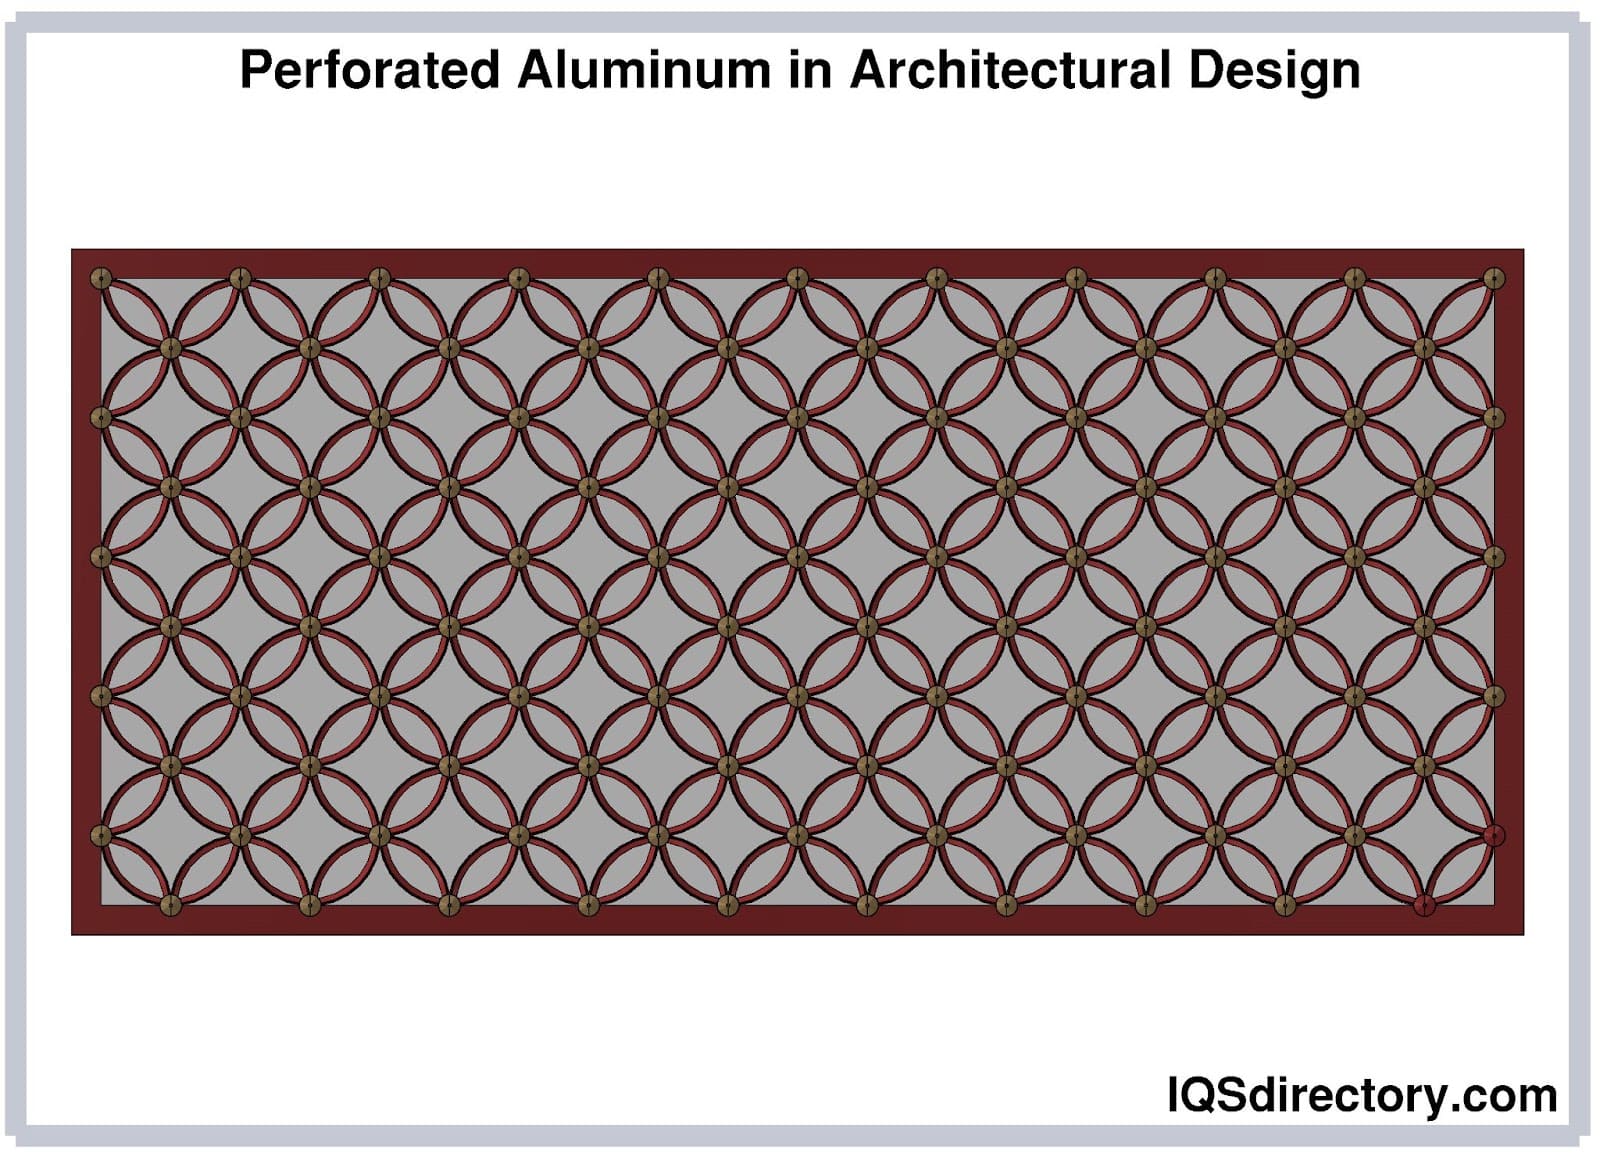 Perforated Aluminum in Architectural Design